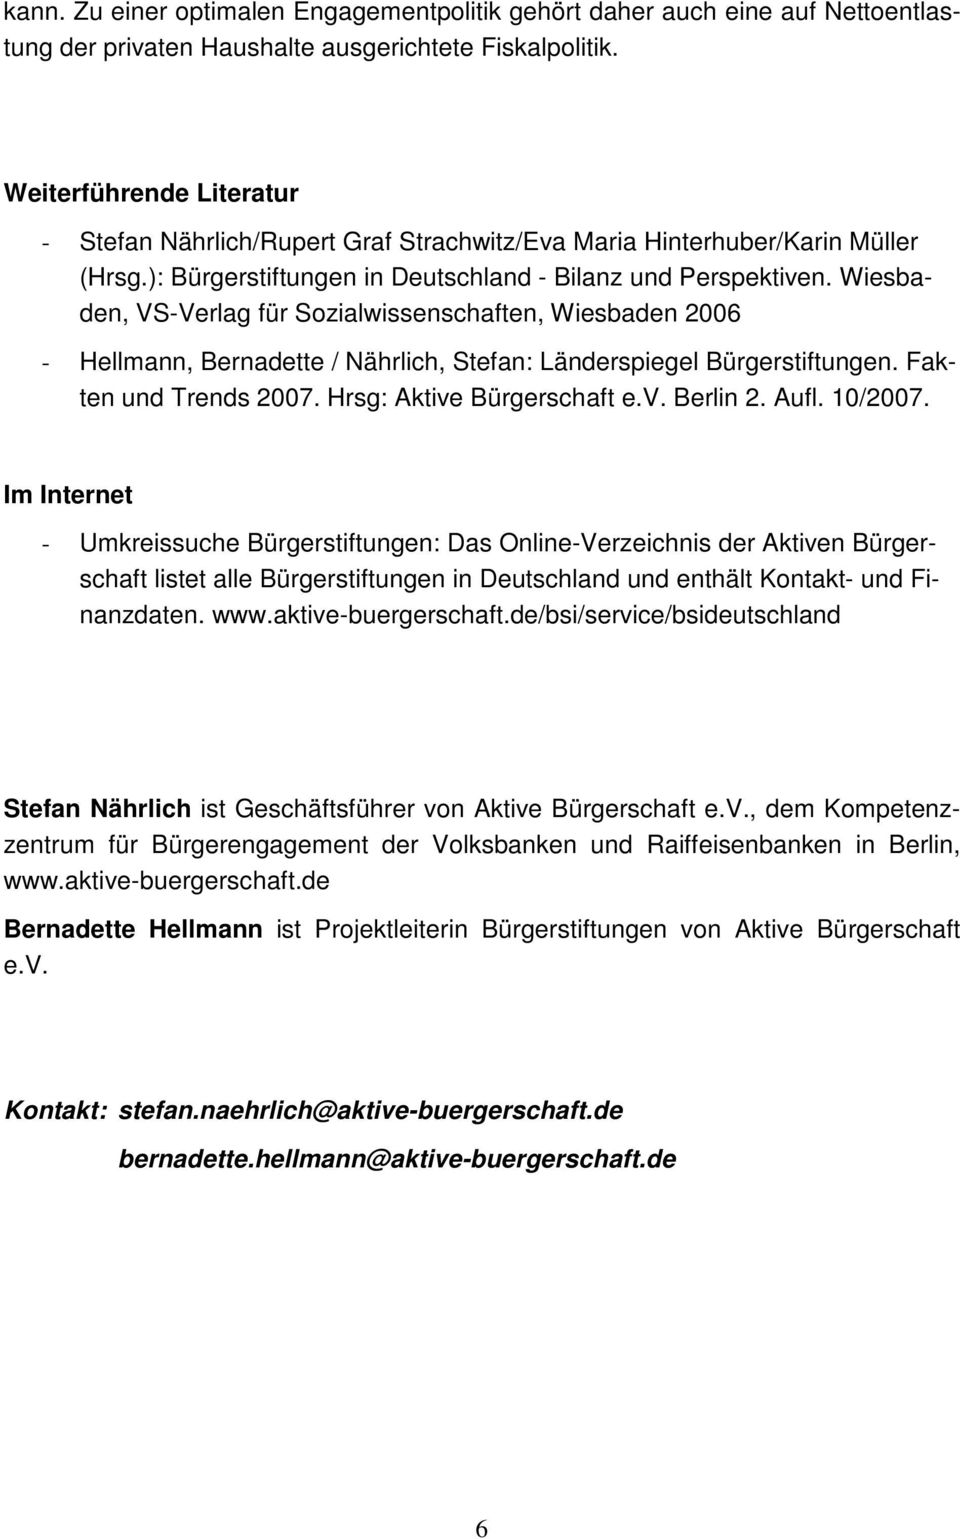 Wiesbaden, VS-Verlag für Sozialwissenschaften, Wiesbaden 2006 - Hellmann, Bernadette / Nährlich, Stefan: Länderspiegel Bürgerstiftungen. Fakten und Trends 2007. Hrsg: Aktive Bürgerschaft e.v. Berlin 2.